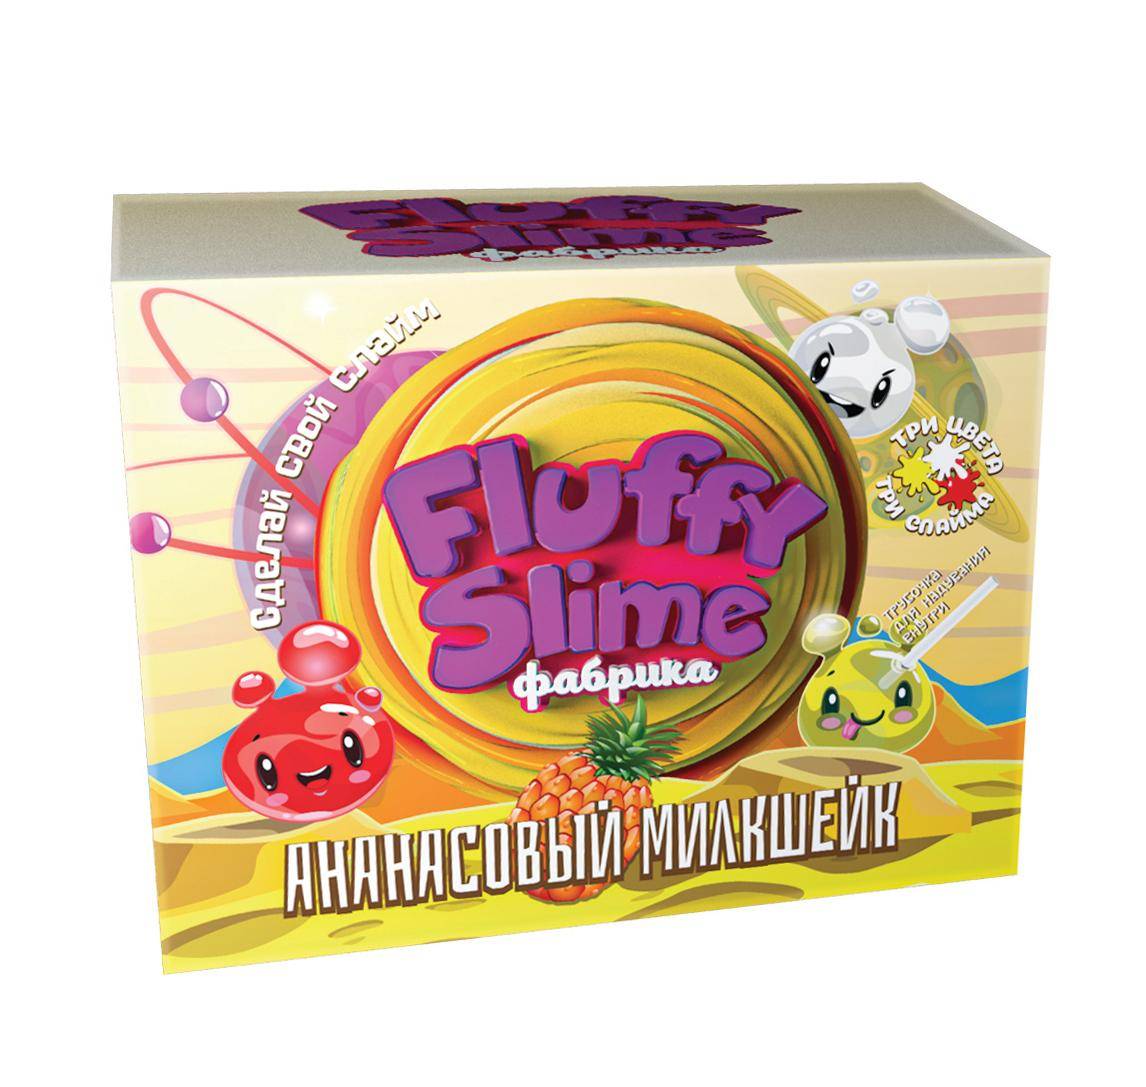 Флаффи слайм-фабрика "Ананасовый милкшейк" 3 слайма 3 цвета Инновации для Детей 888пл